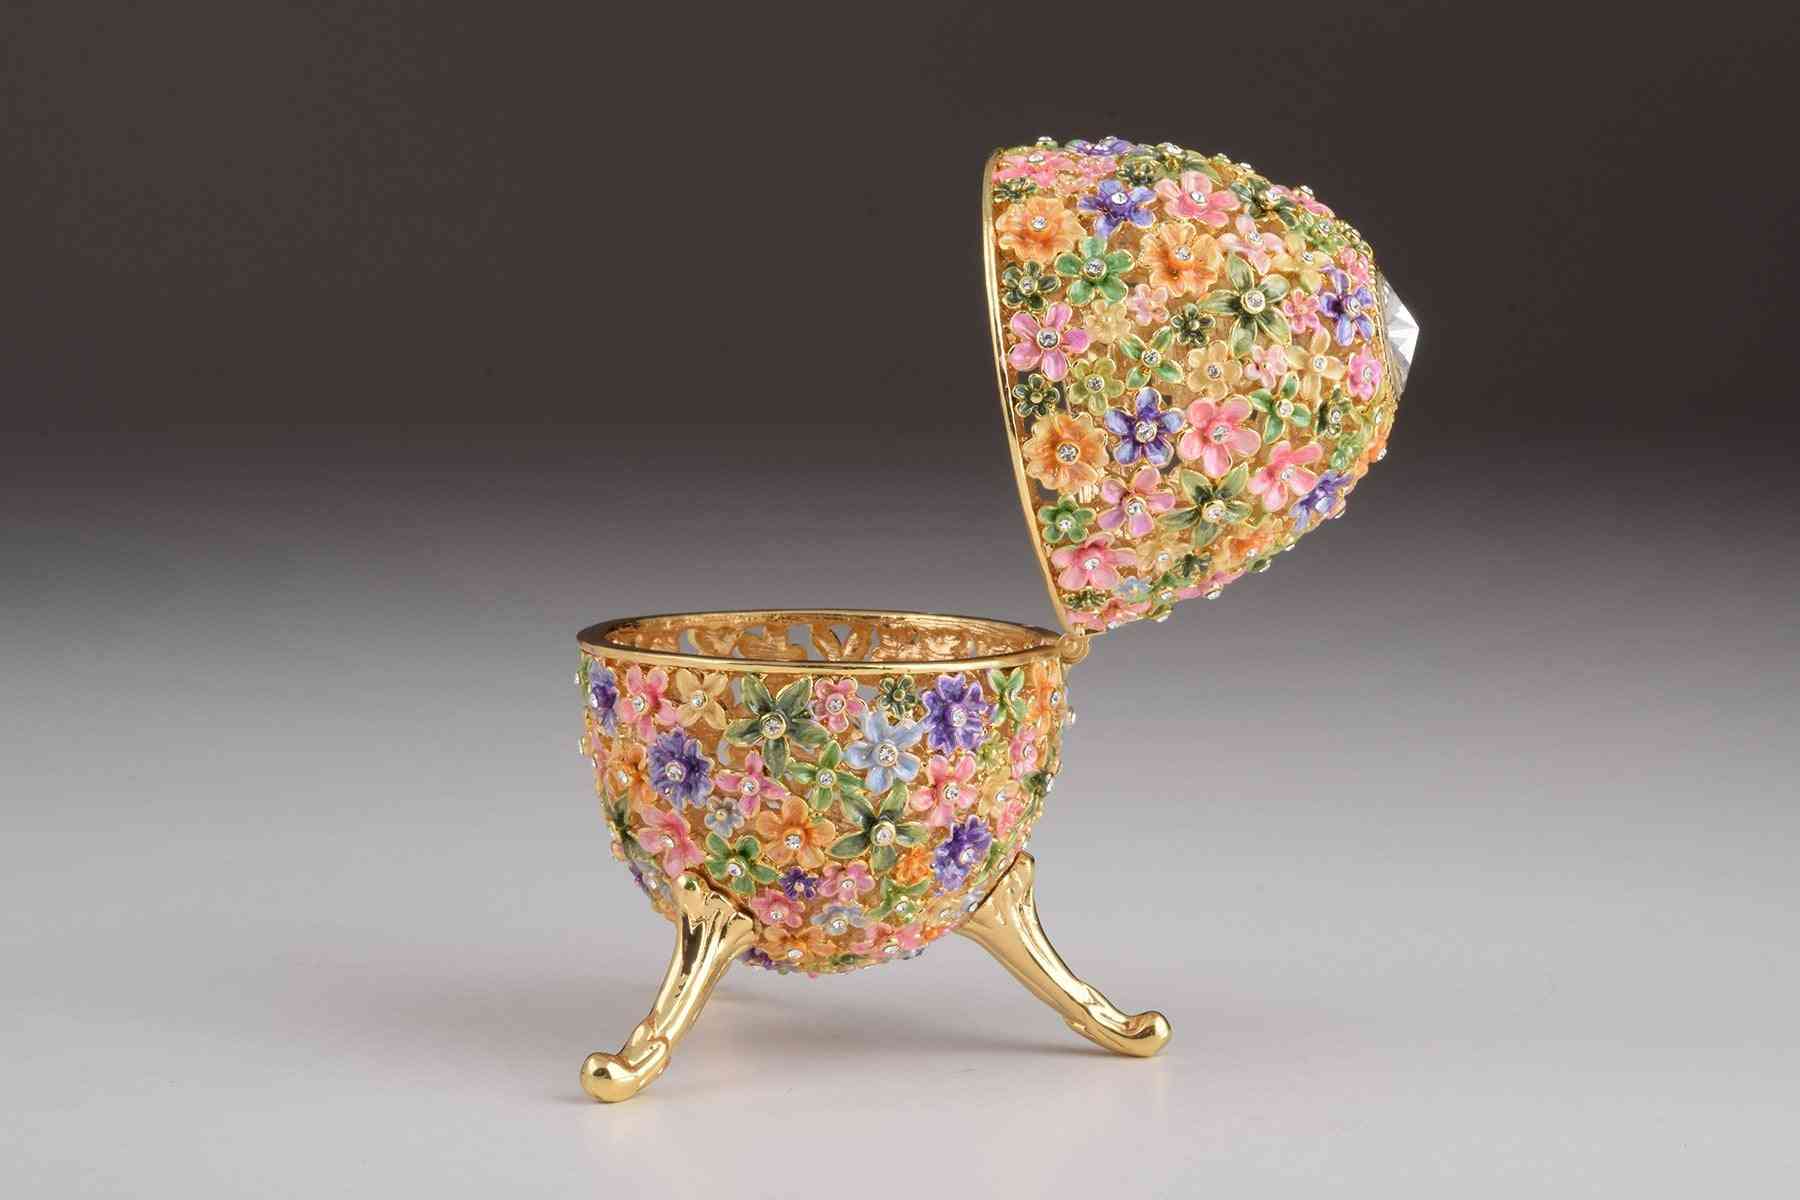 Goud met kleurrijke bloemen paasei - trinket box